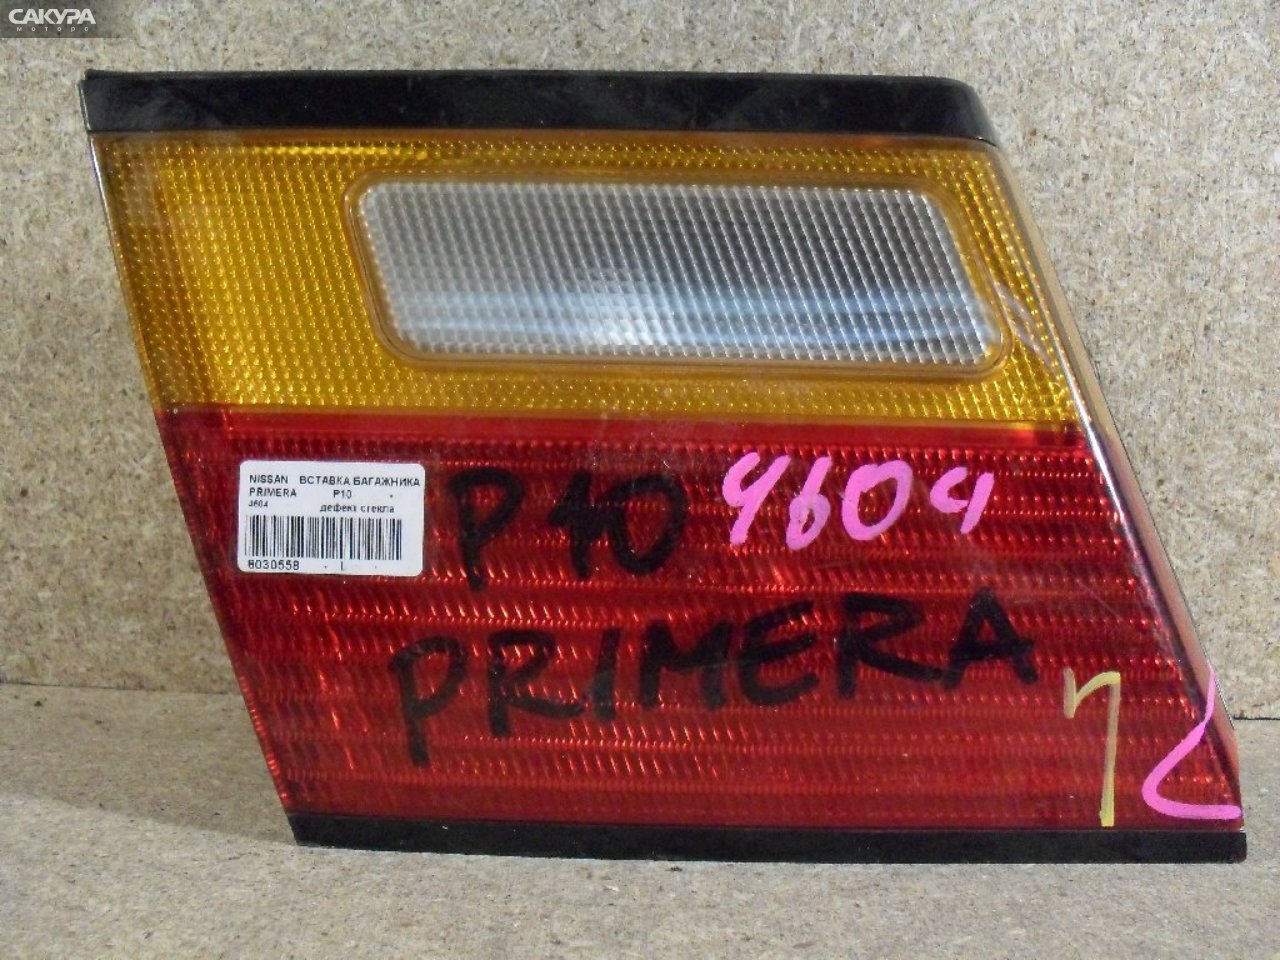 Фонарь вставка багажника левый Nissan Primera P10 4604: купить в Сакура Абакан.